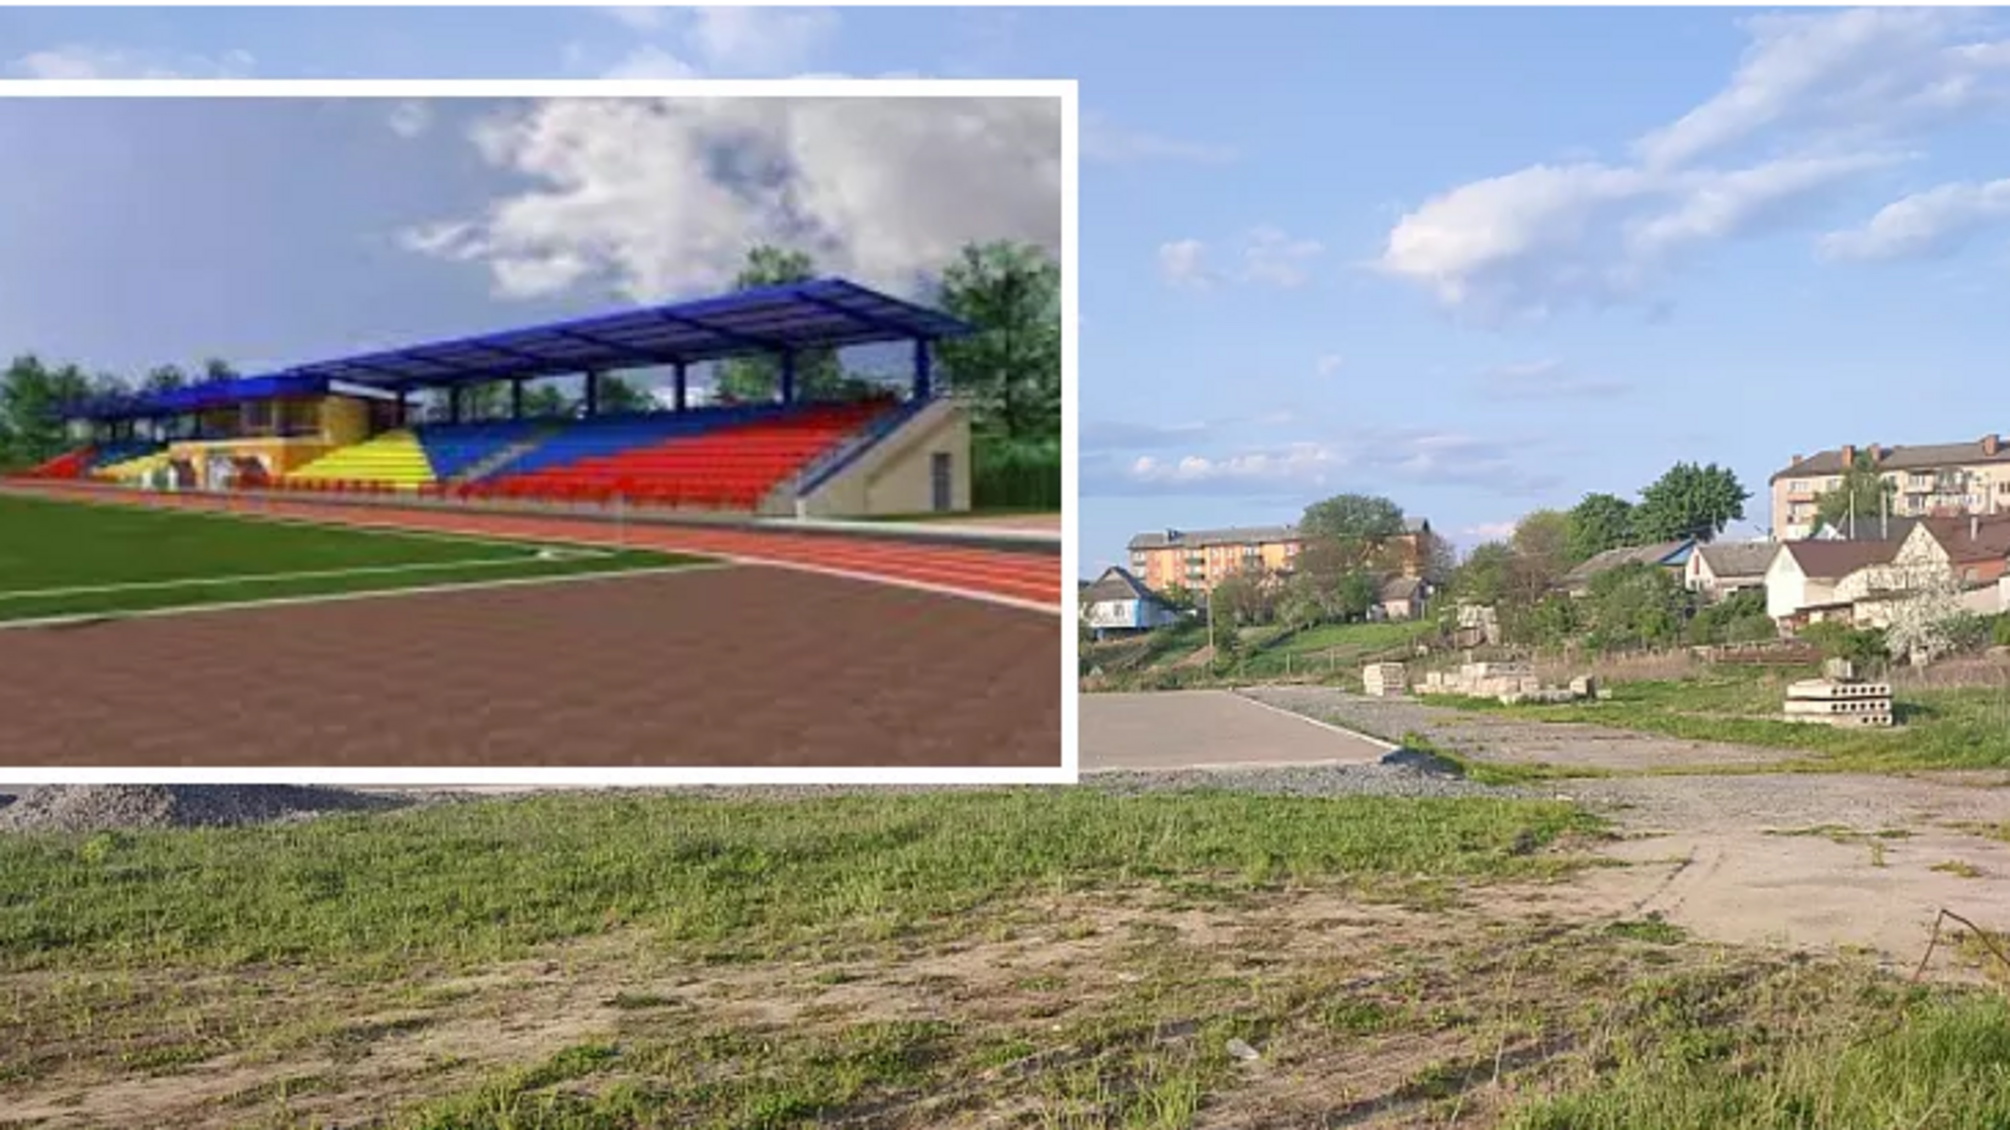 Замість обіцяної реконструкції стадіону підрядник просто посипав поле щебенем